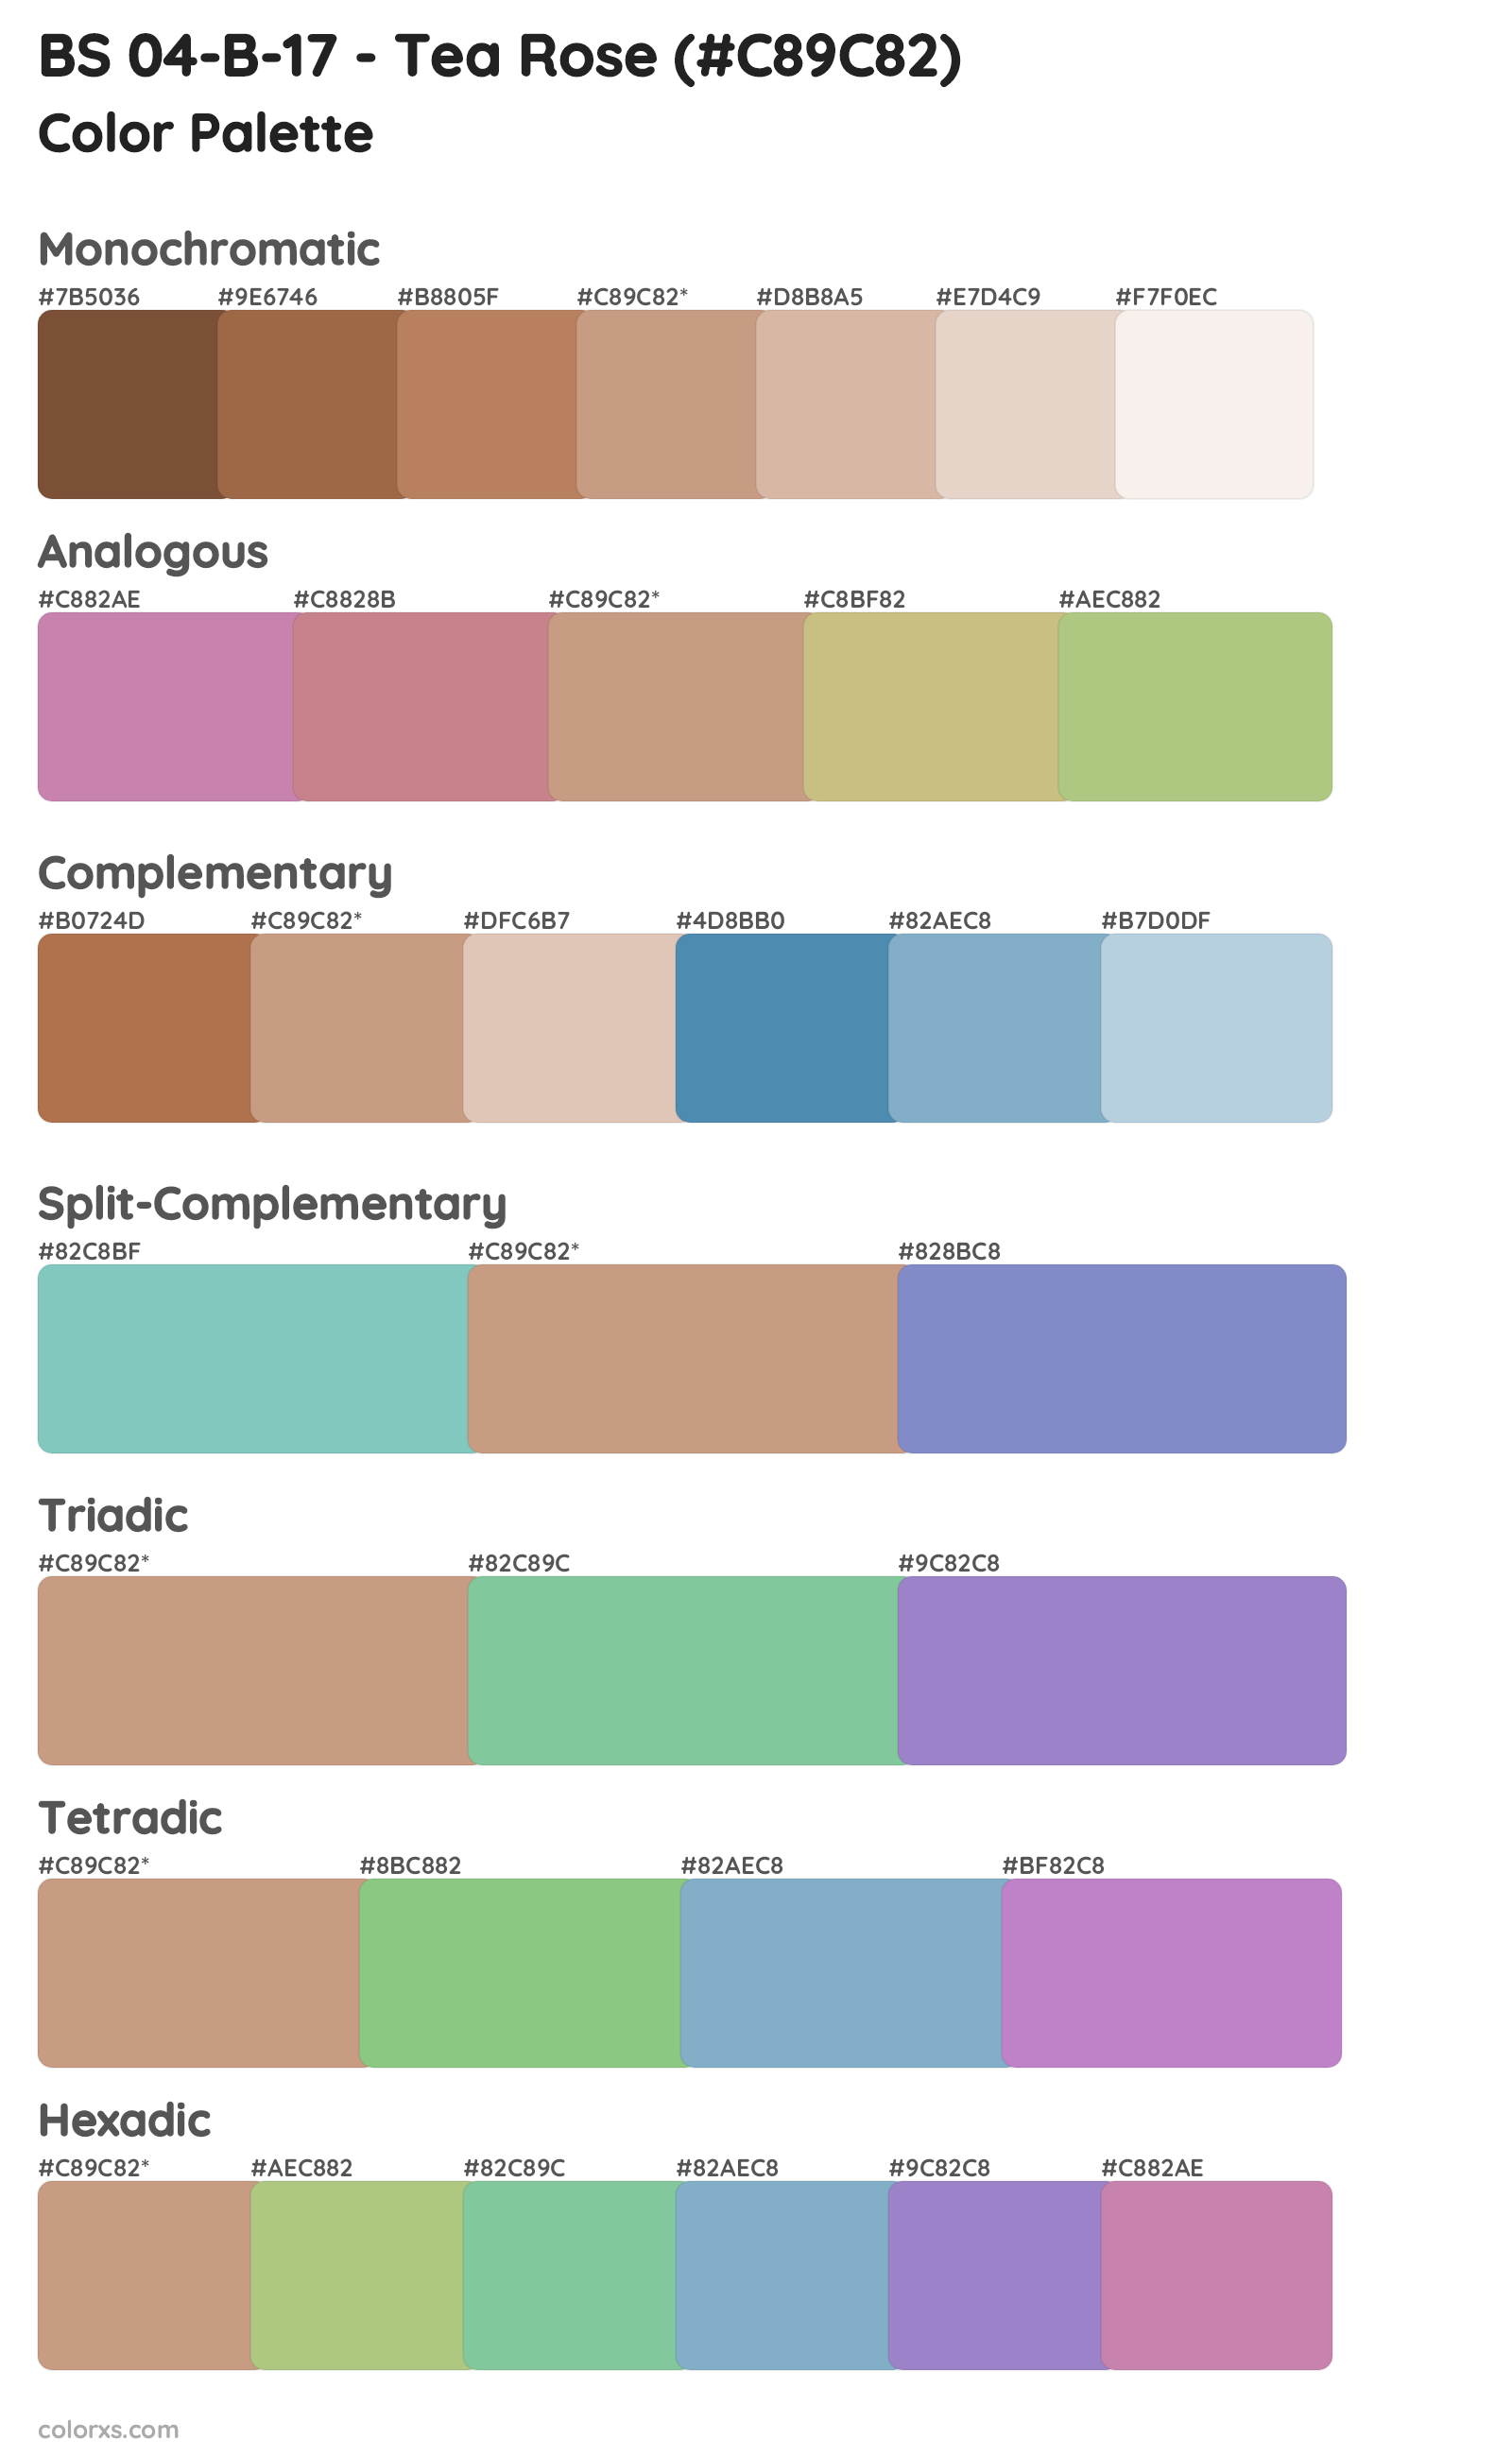 BS 04-B-17 - Tea Rose Color Scheme Palettes